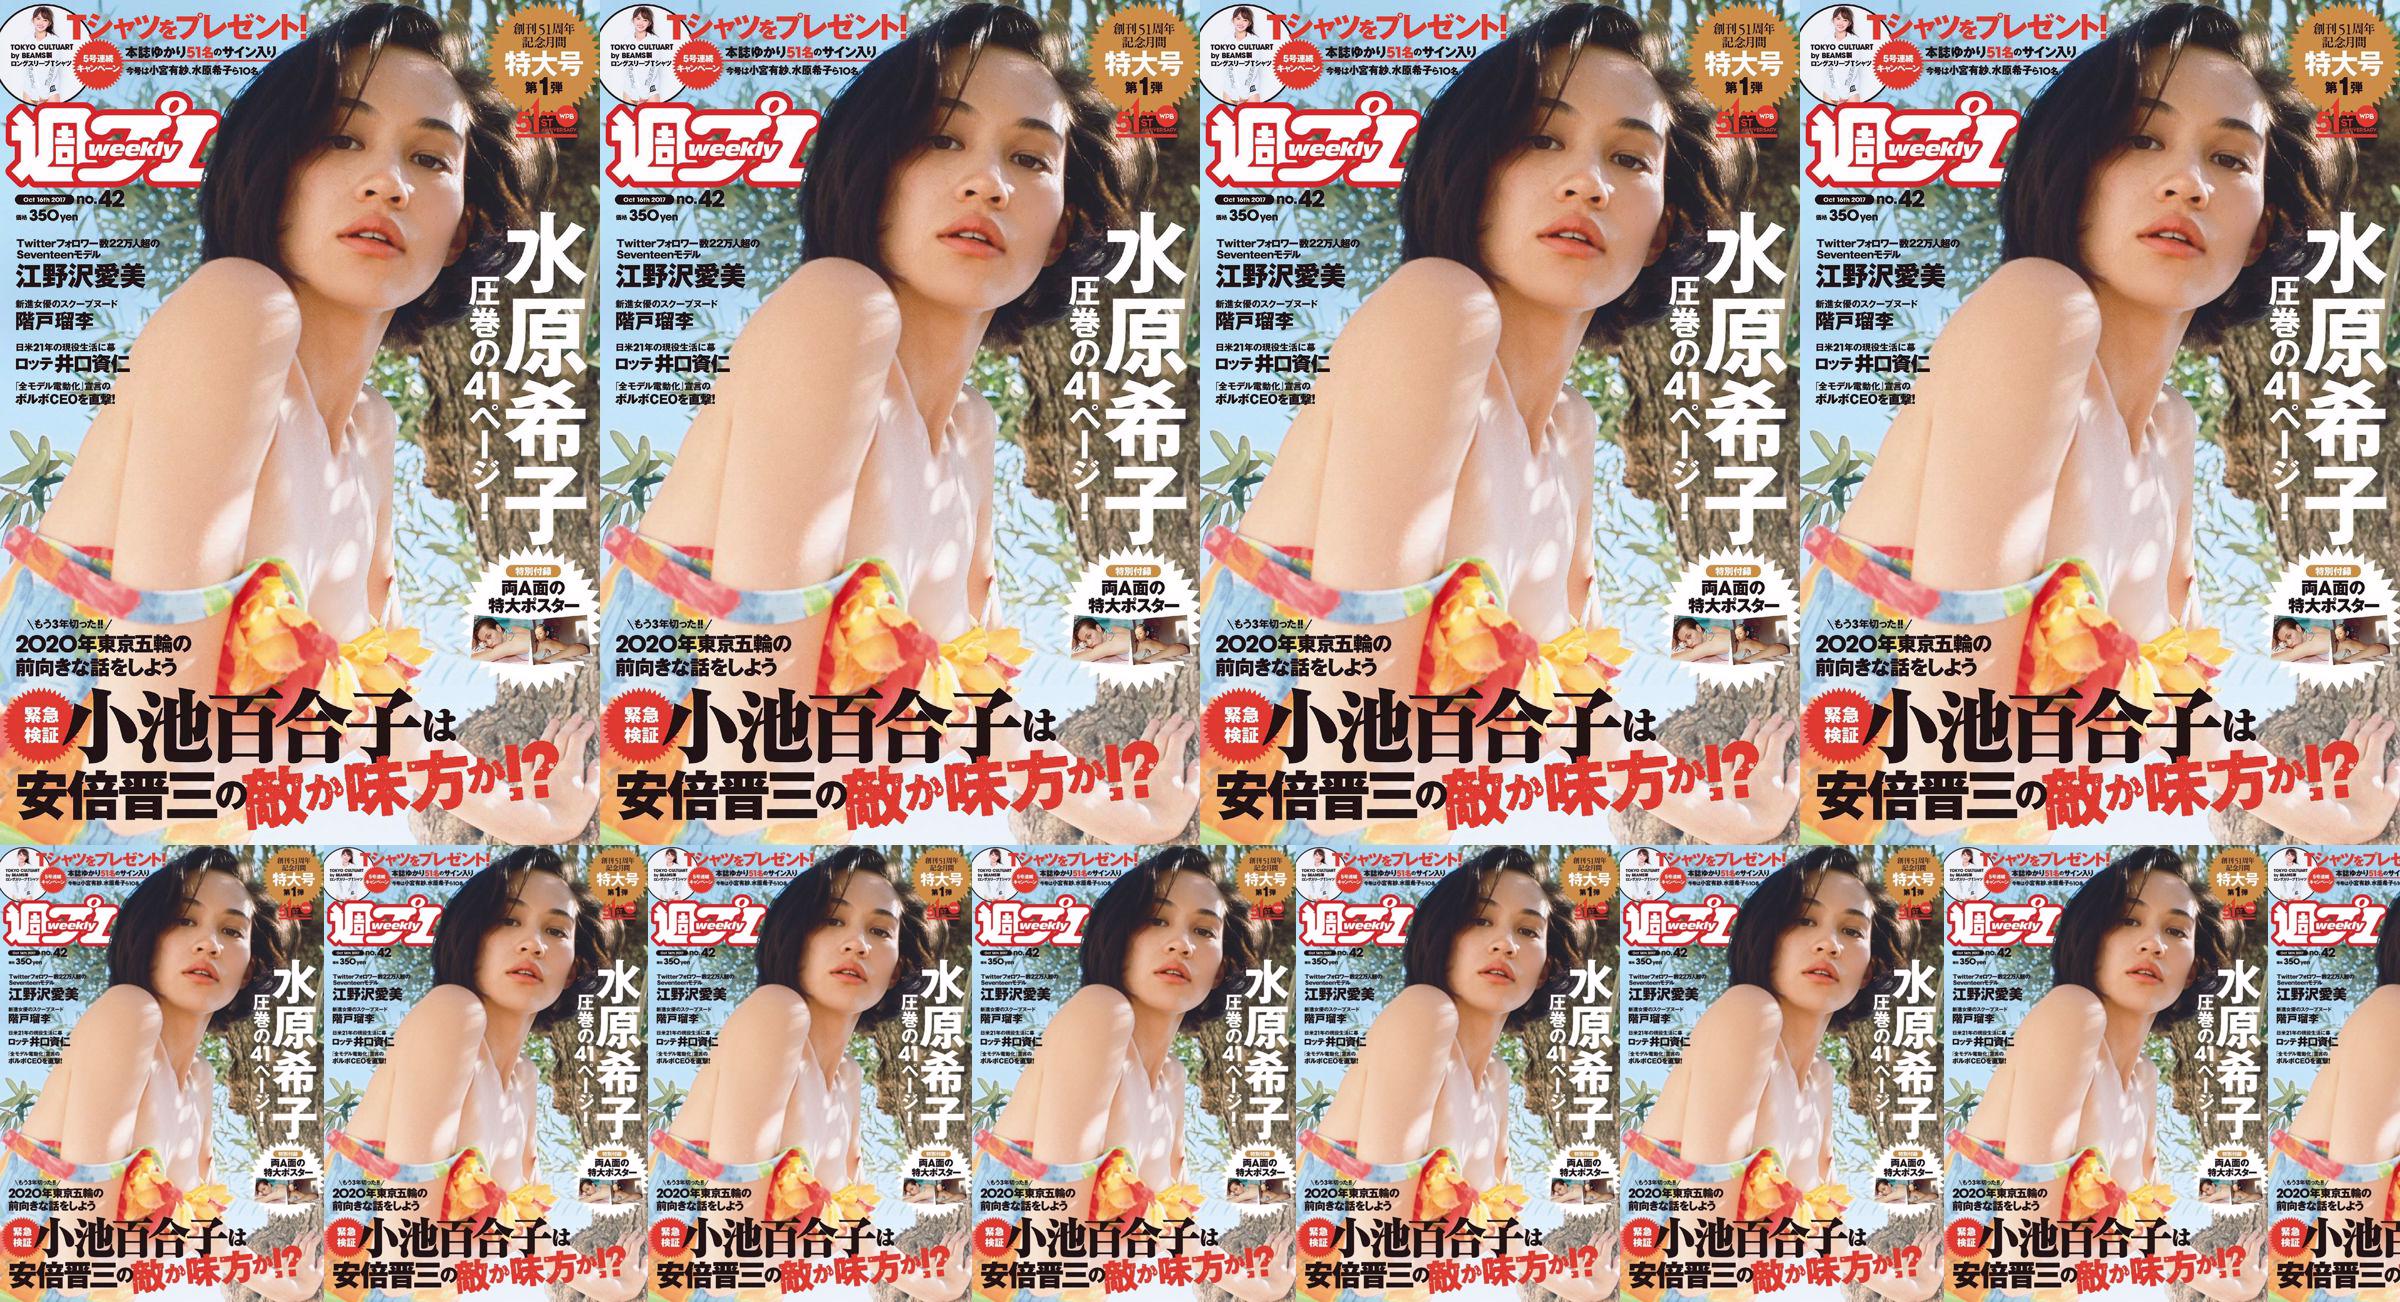 Kiko Mizuhara Manami Enosawa Serina Fukui Miu Nakamura Ruri Shinato [Weekly Playboy] 2017 No.42 Photo Magazine No.5d9725 หน้า 1